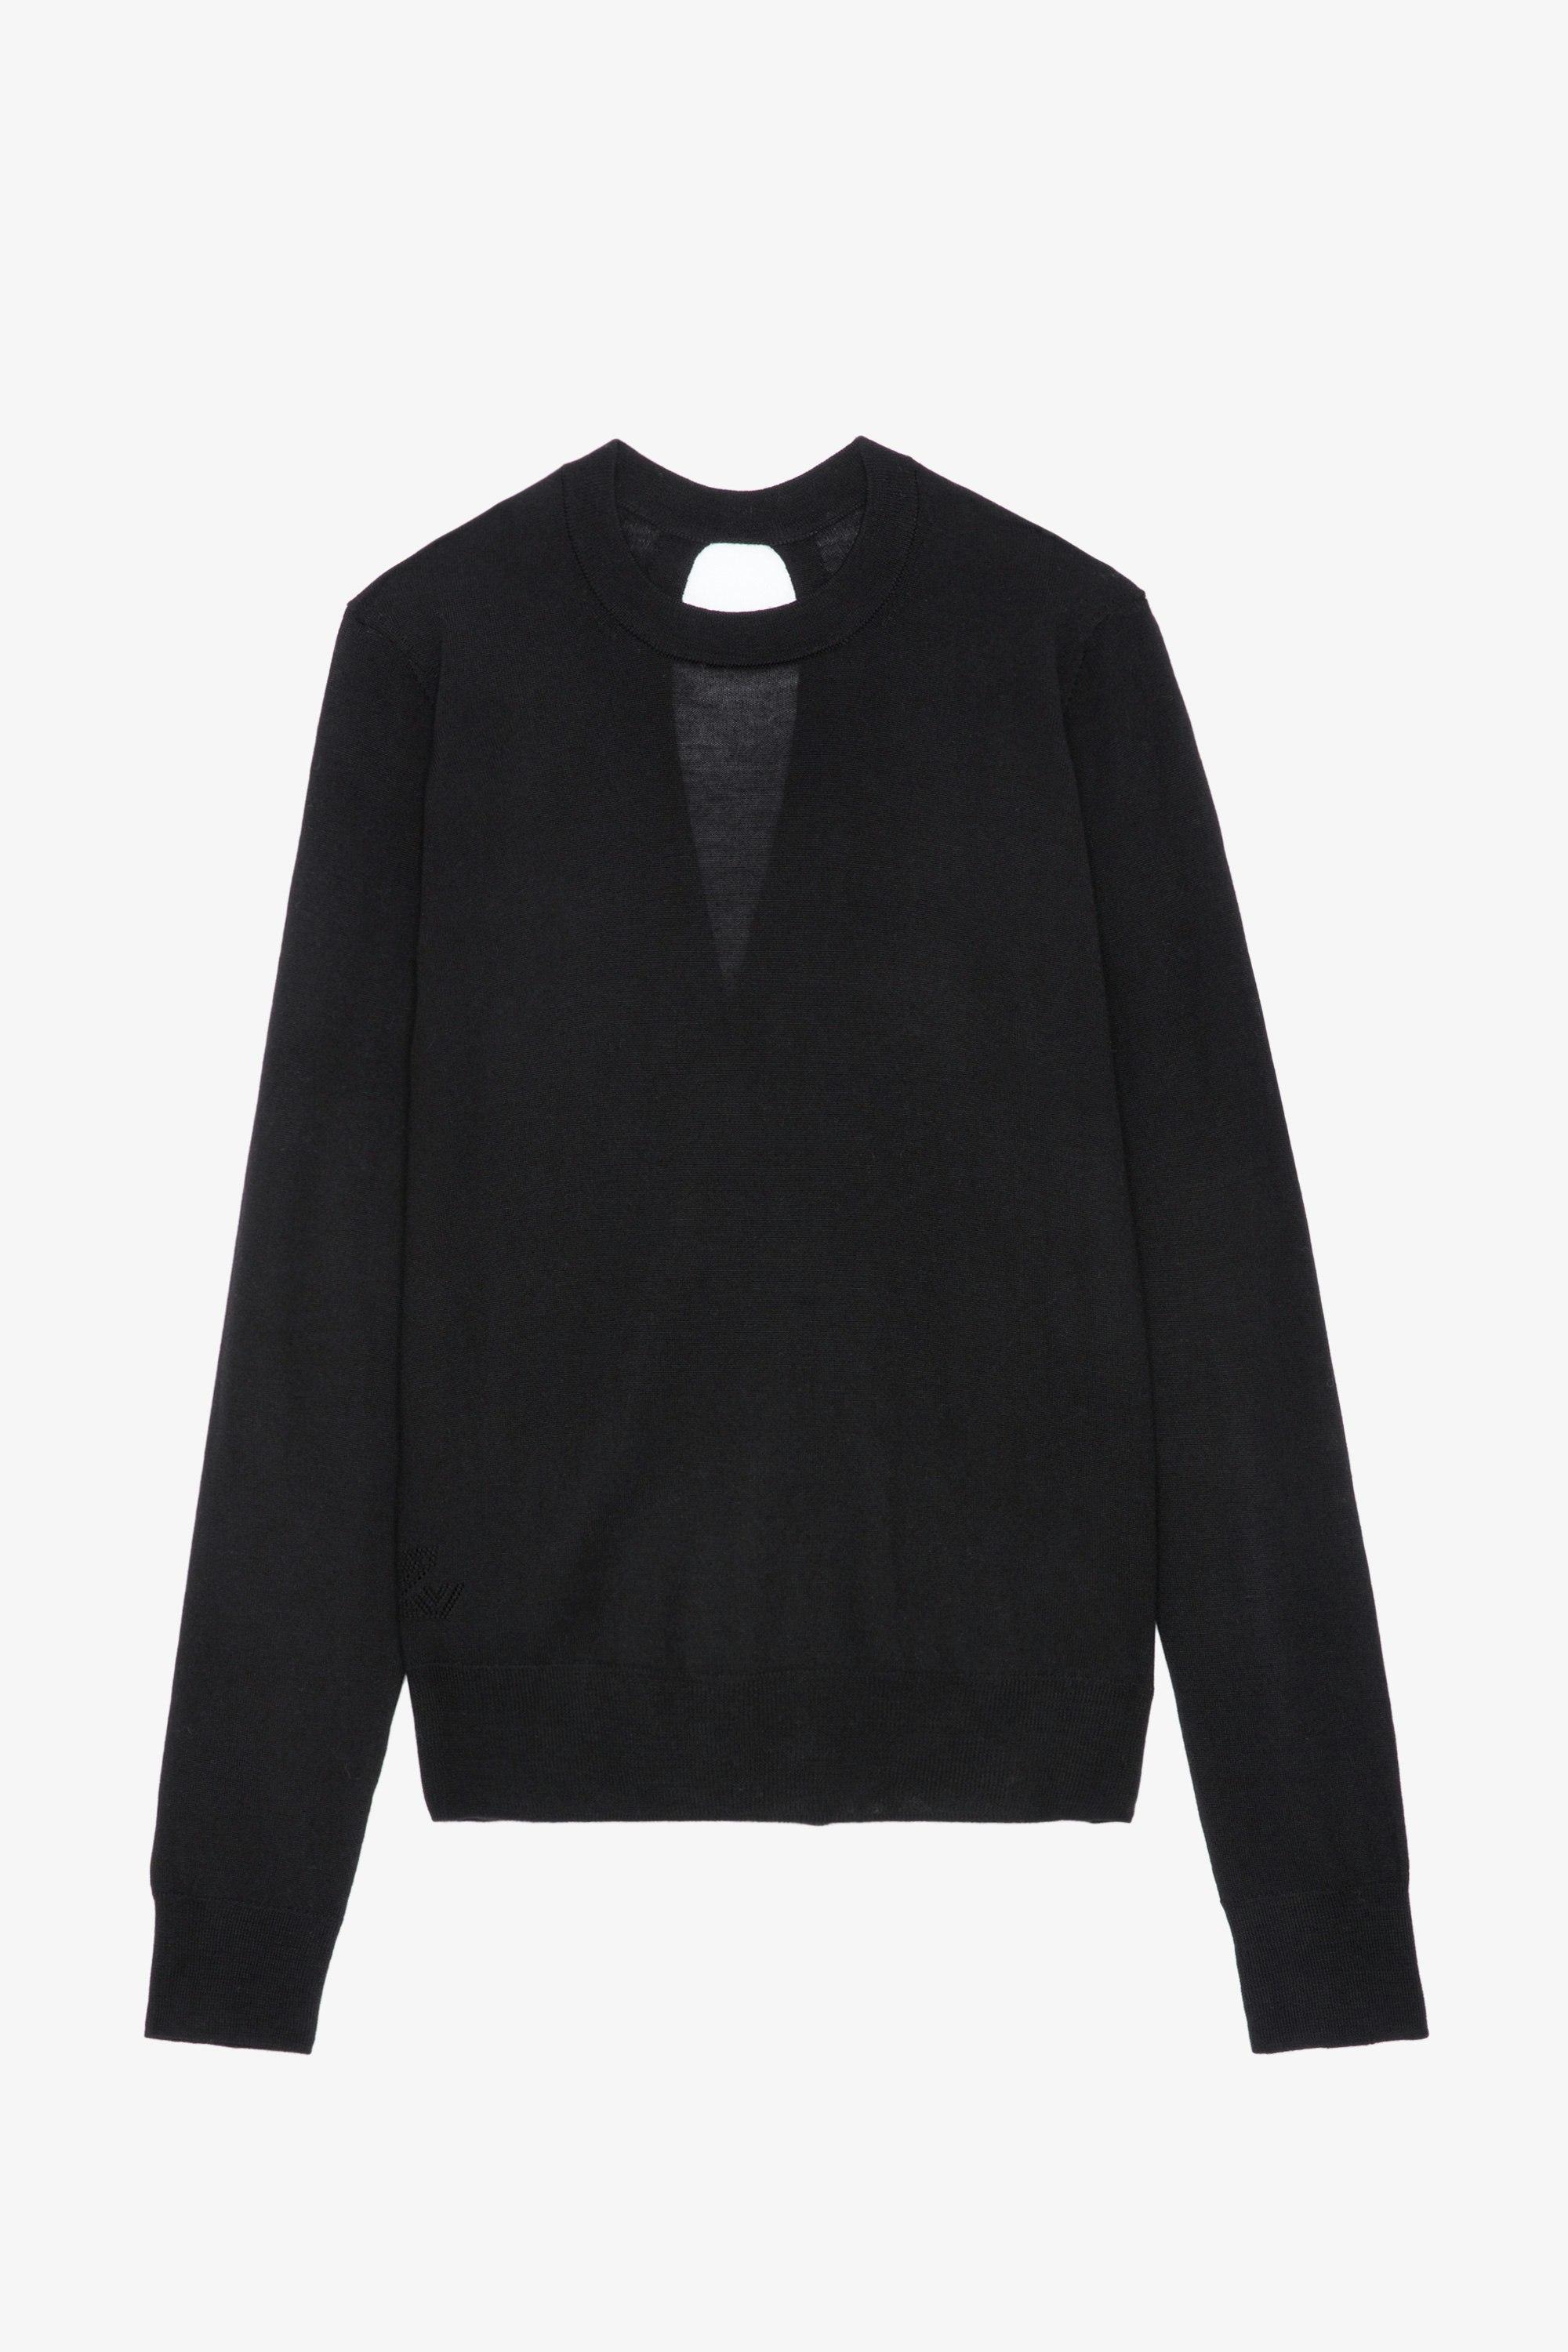 Maglione Emma - Maglione in lana merino nero girocollo con maniche lunghe e schiena incrociata aperta.